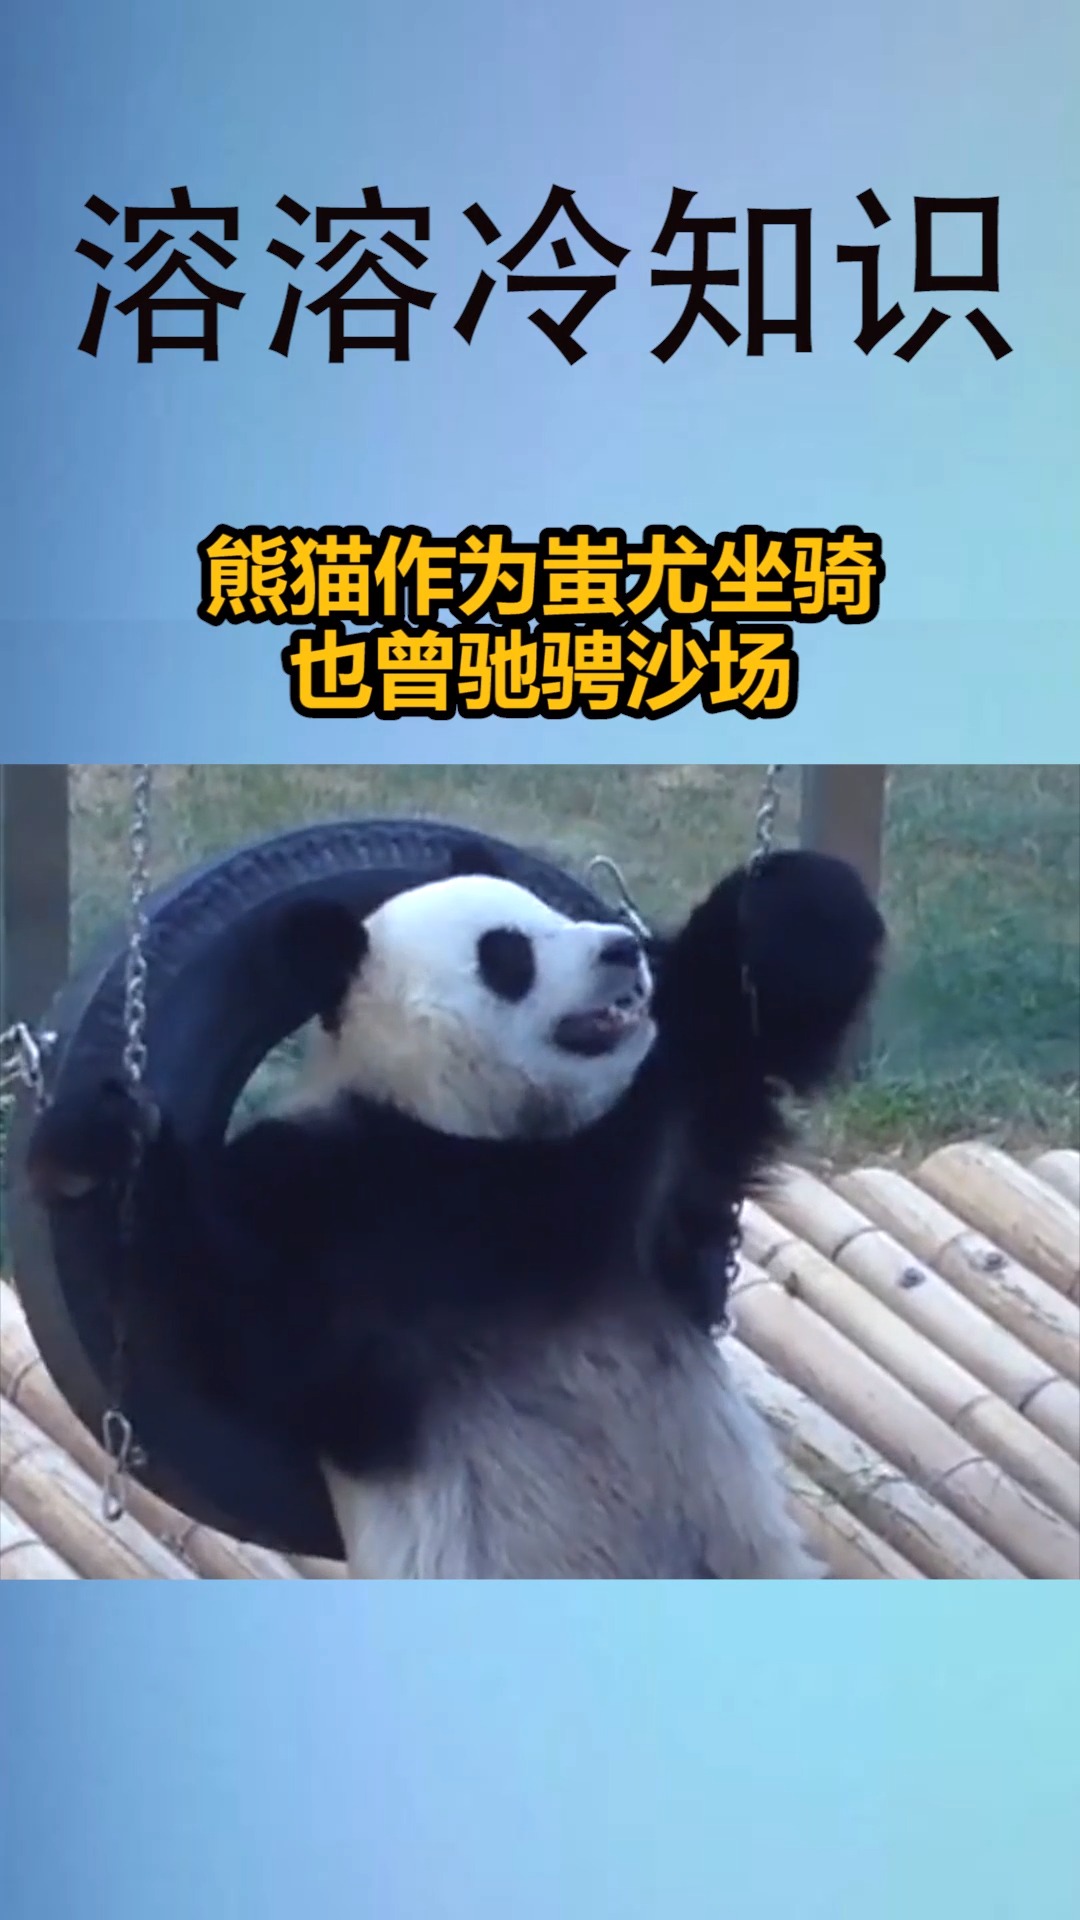 我要上热门#熊猫作为蚩尤坐骑,也曾吵骋沙场